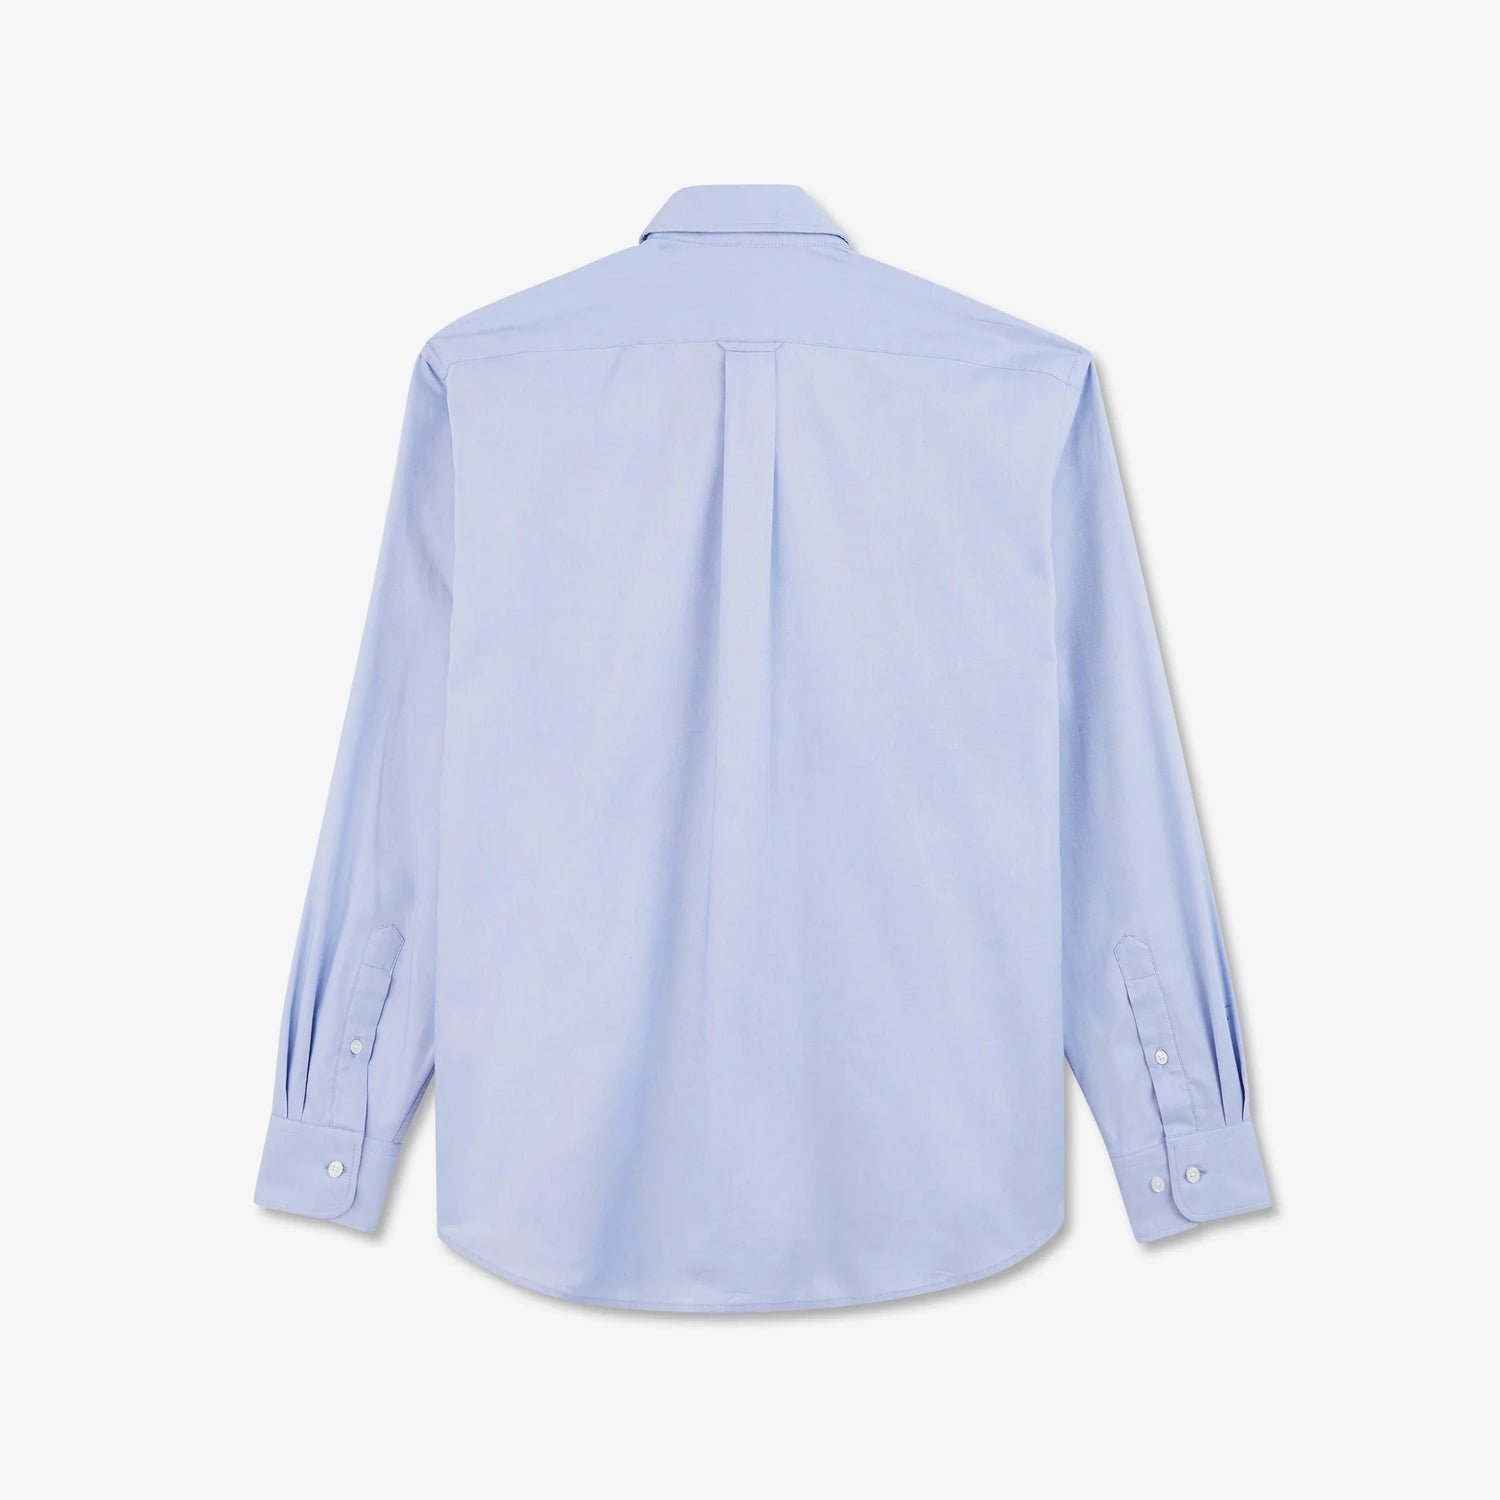 light-blue-cotton-shirt_ppshiche0020_blm_05